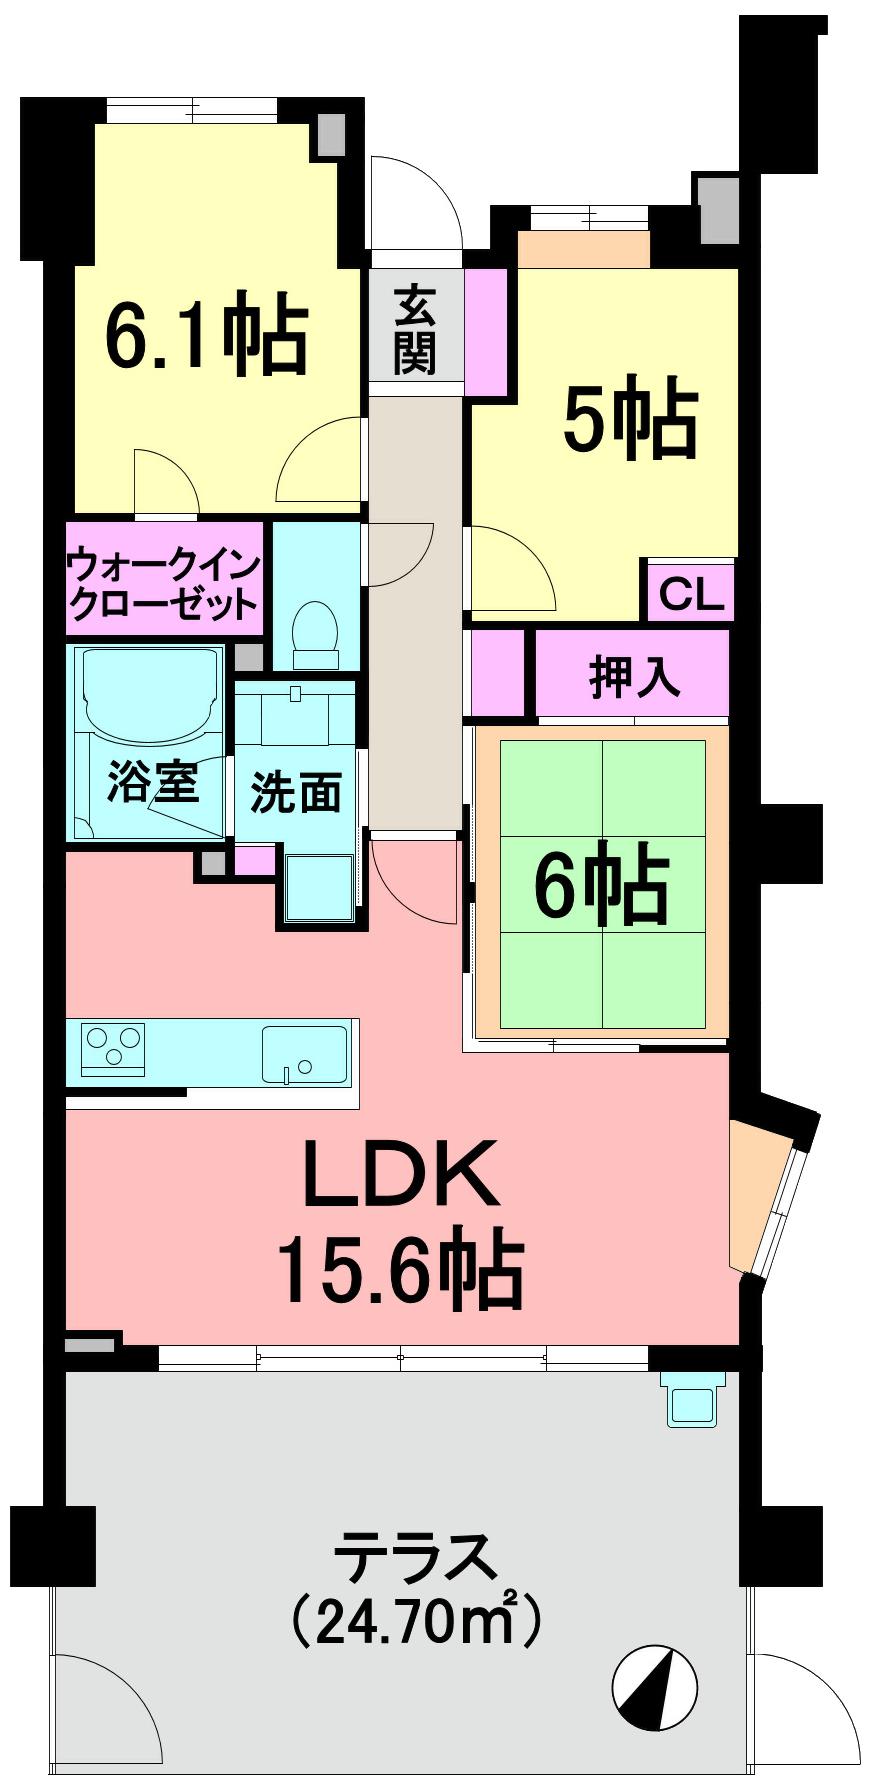 Floor plan. 3LDK, Price 40,800,000 yen, Occupied area 70.18 sq m